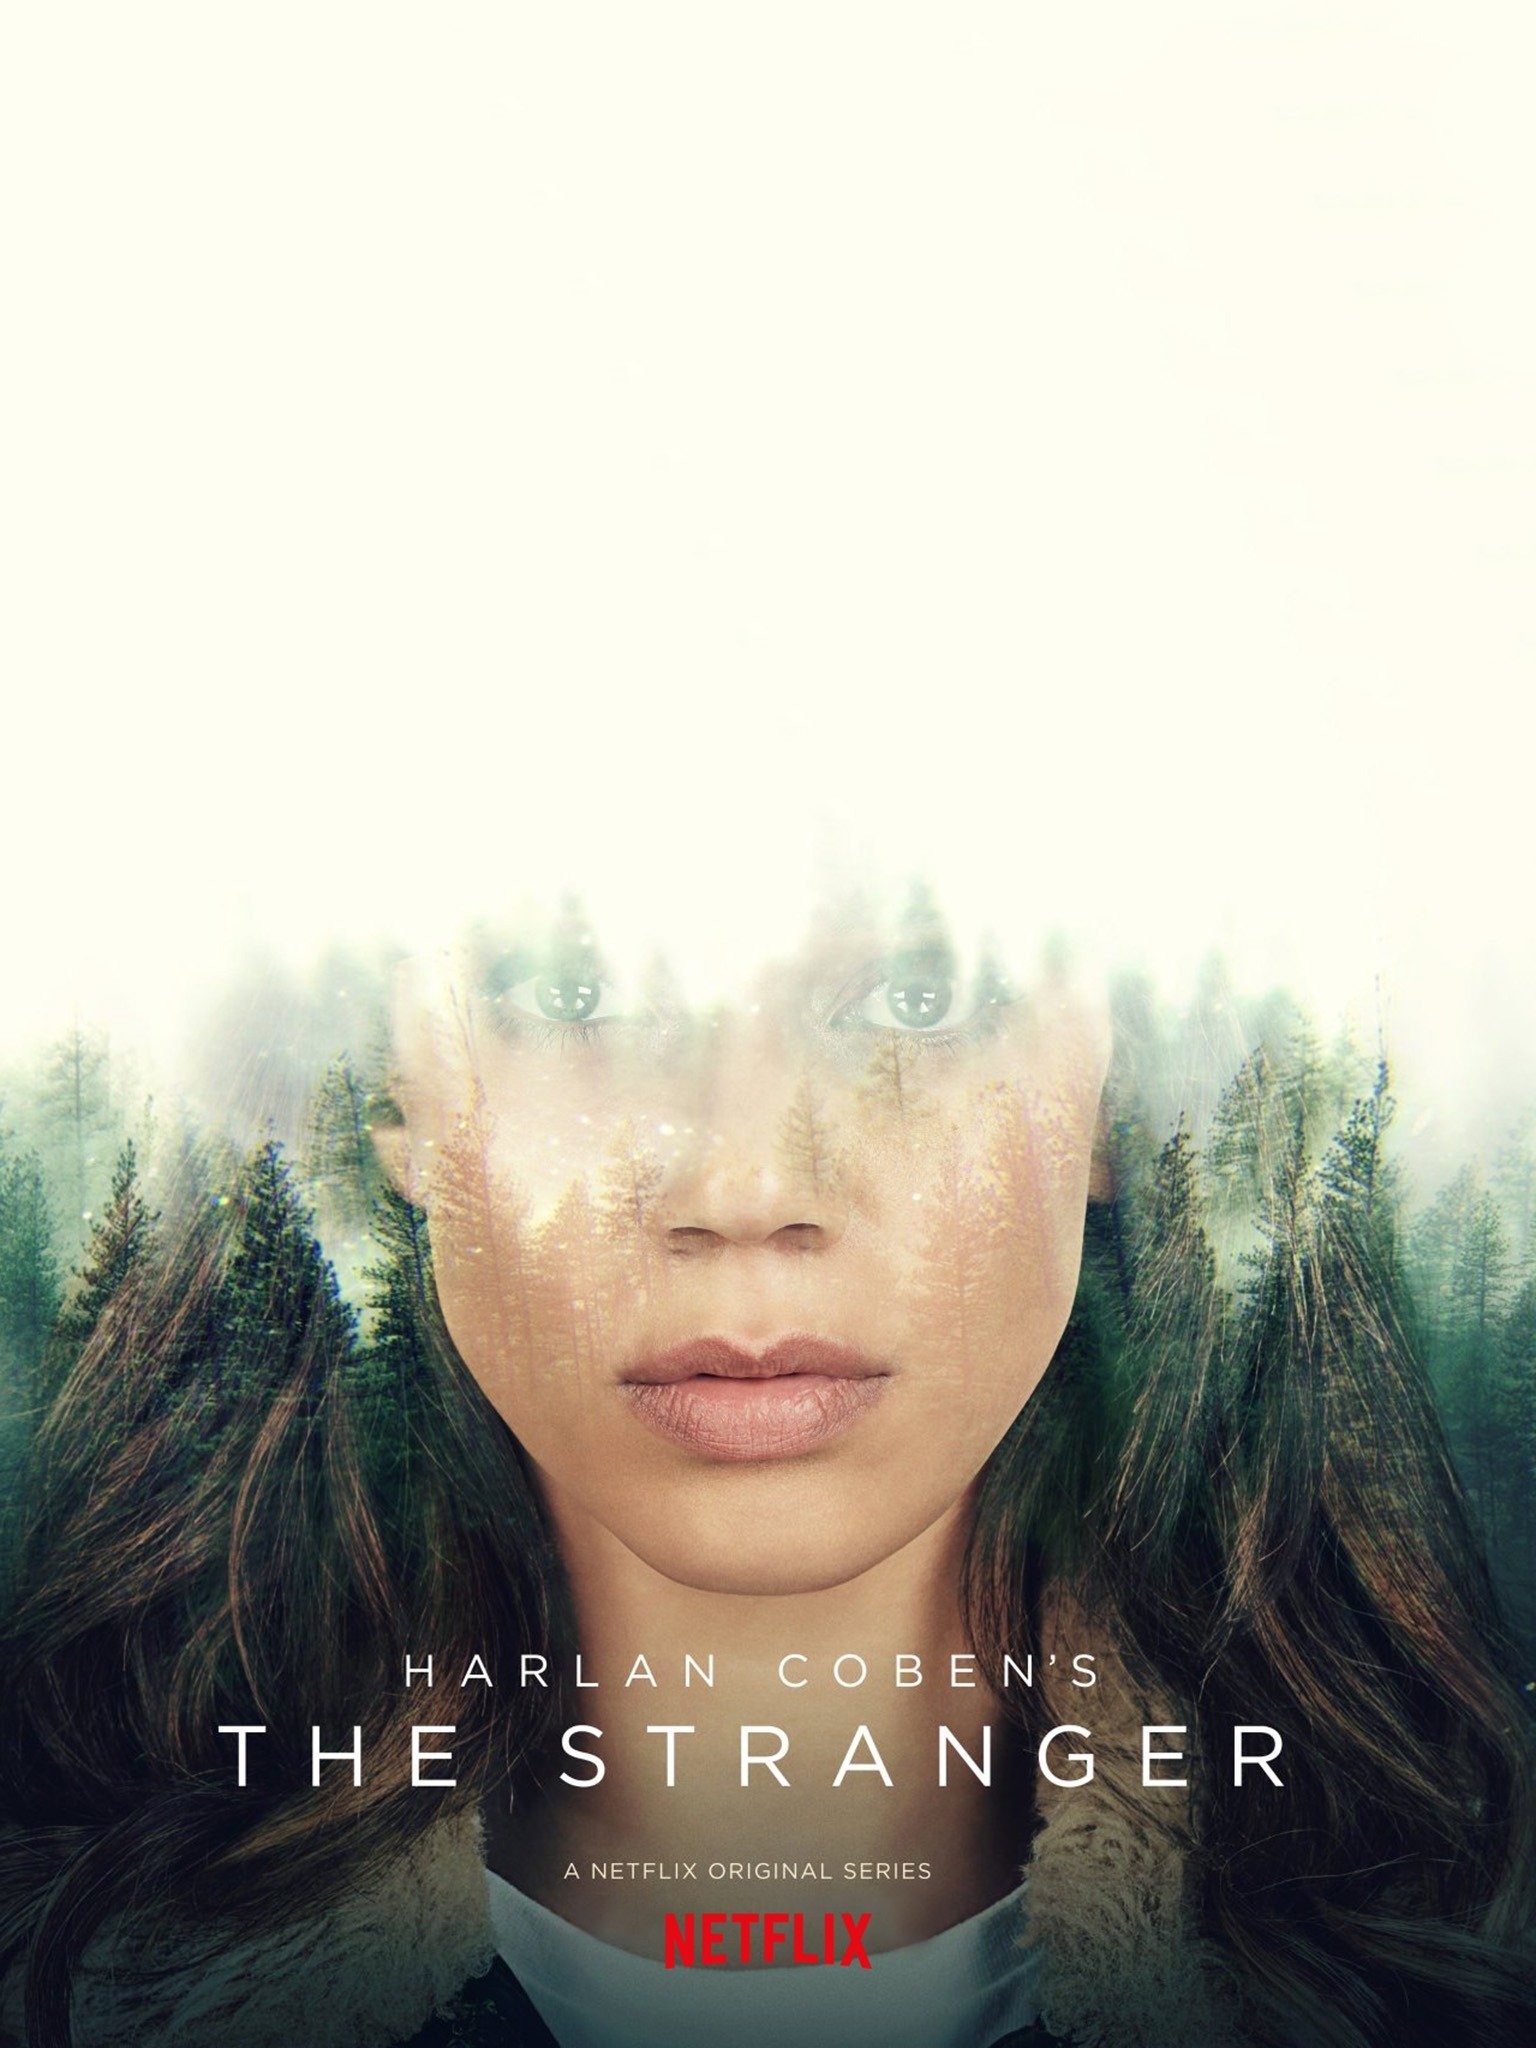 KREA - the rock in stranger things season 5 poster